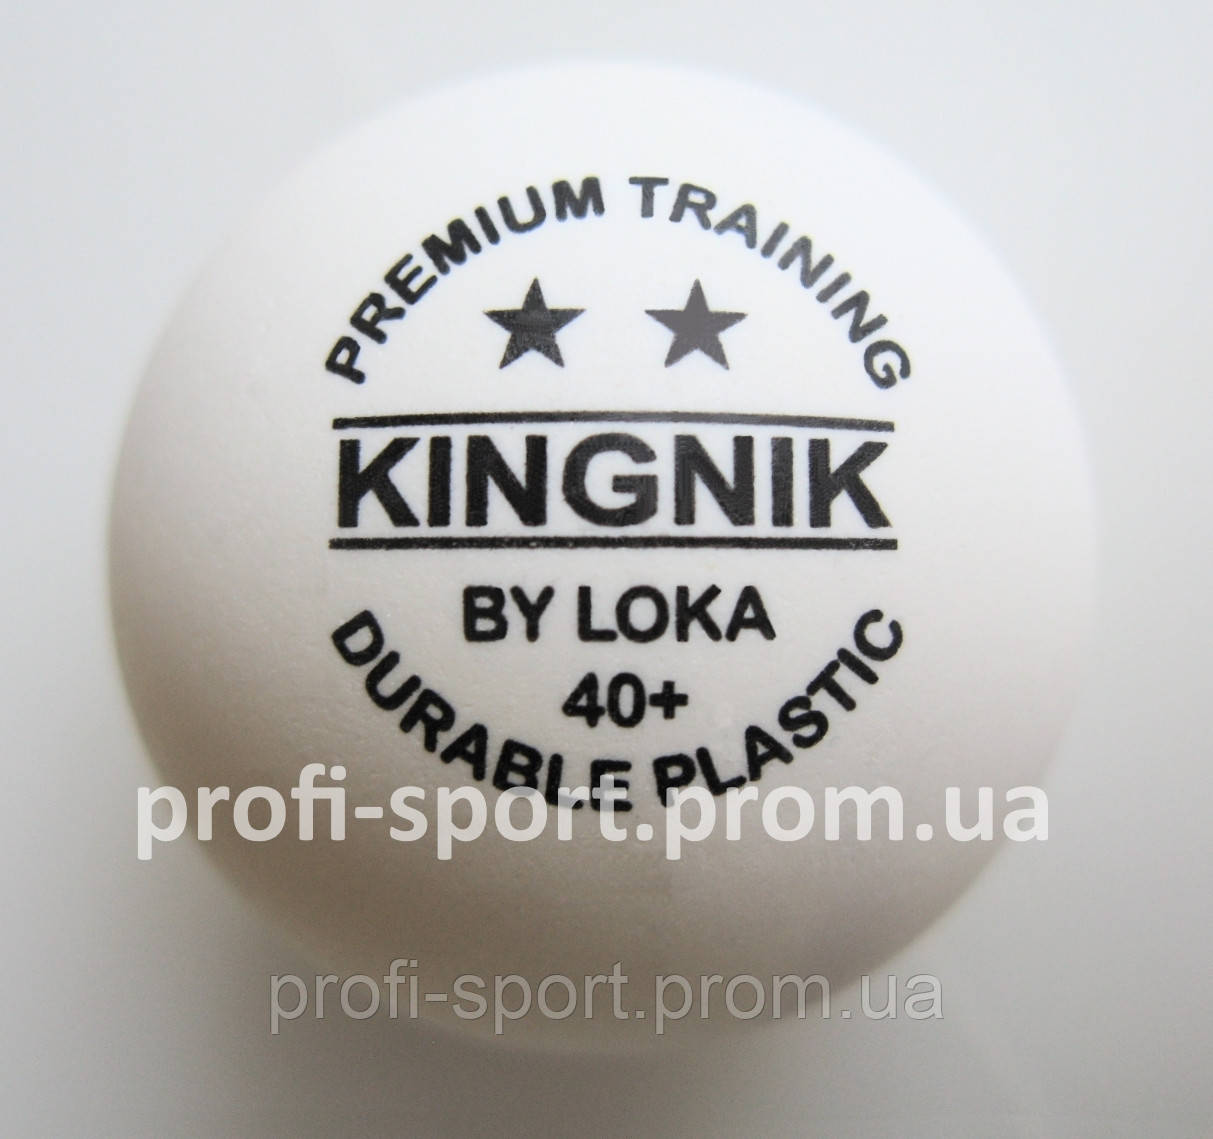 Kingnik 40+ 2* Durable Plastic PREMIUM TRAINING пластикові м'ячі настільний теніс